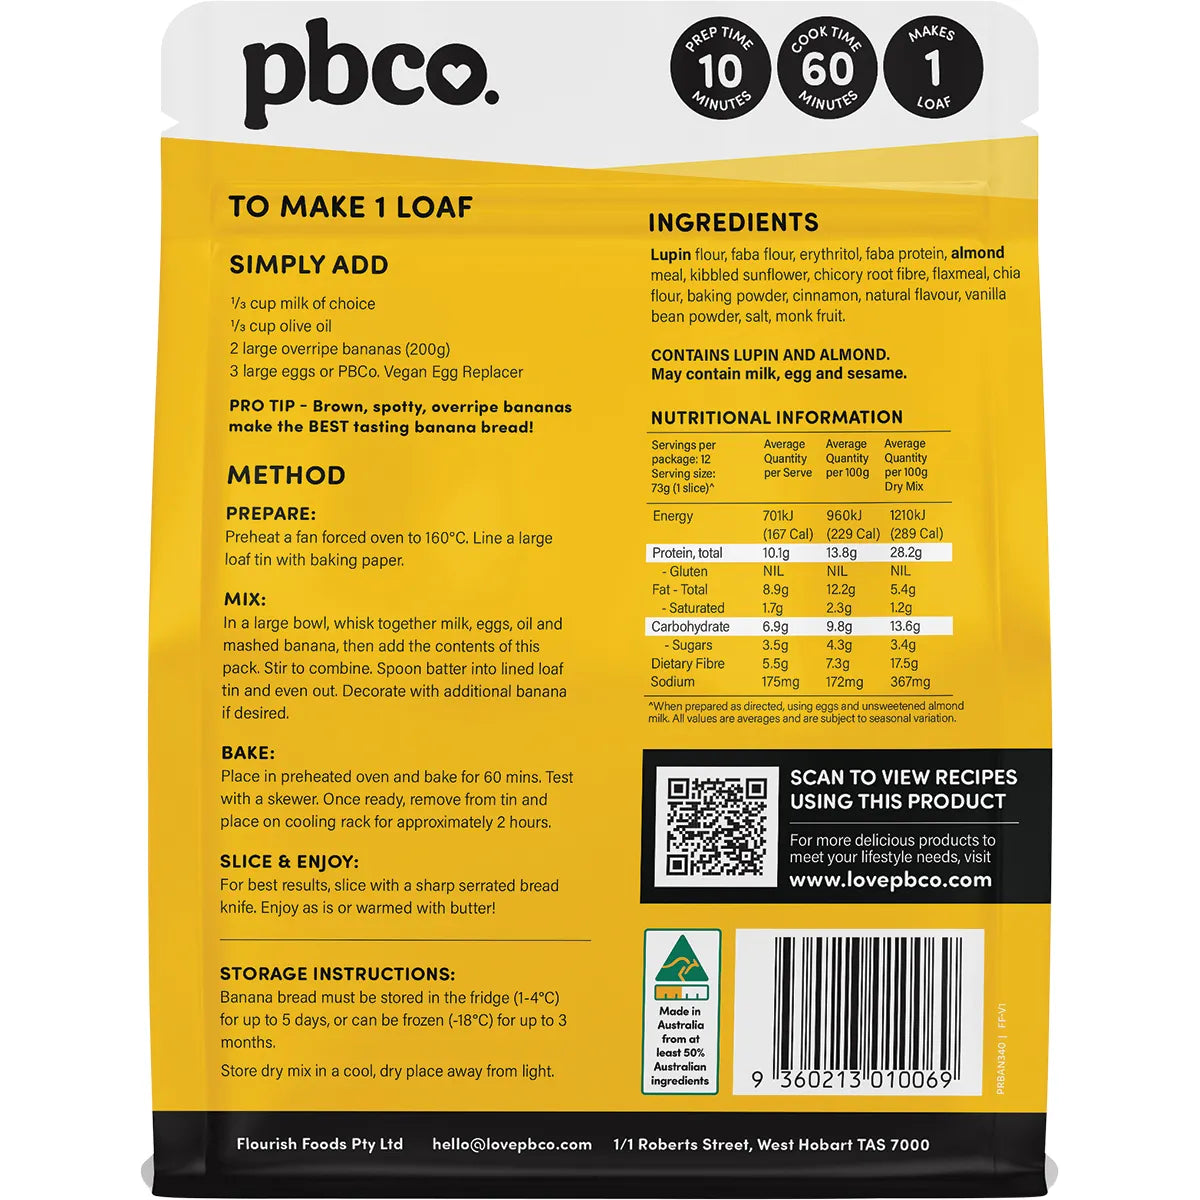 PBCO Plant Protein Banana Bread Mix 340g